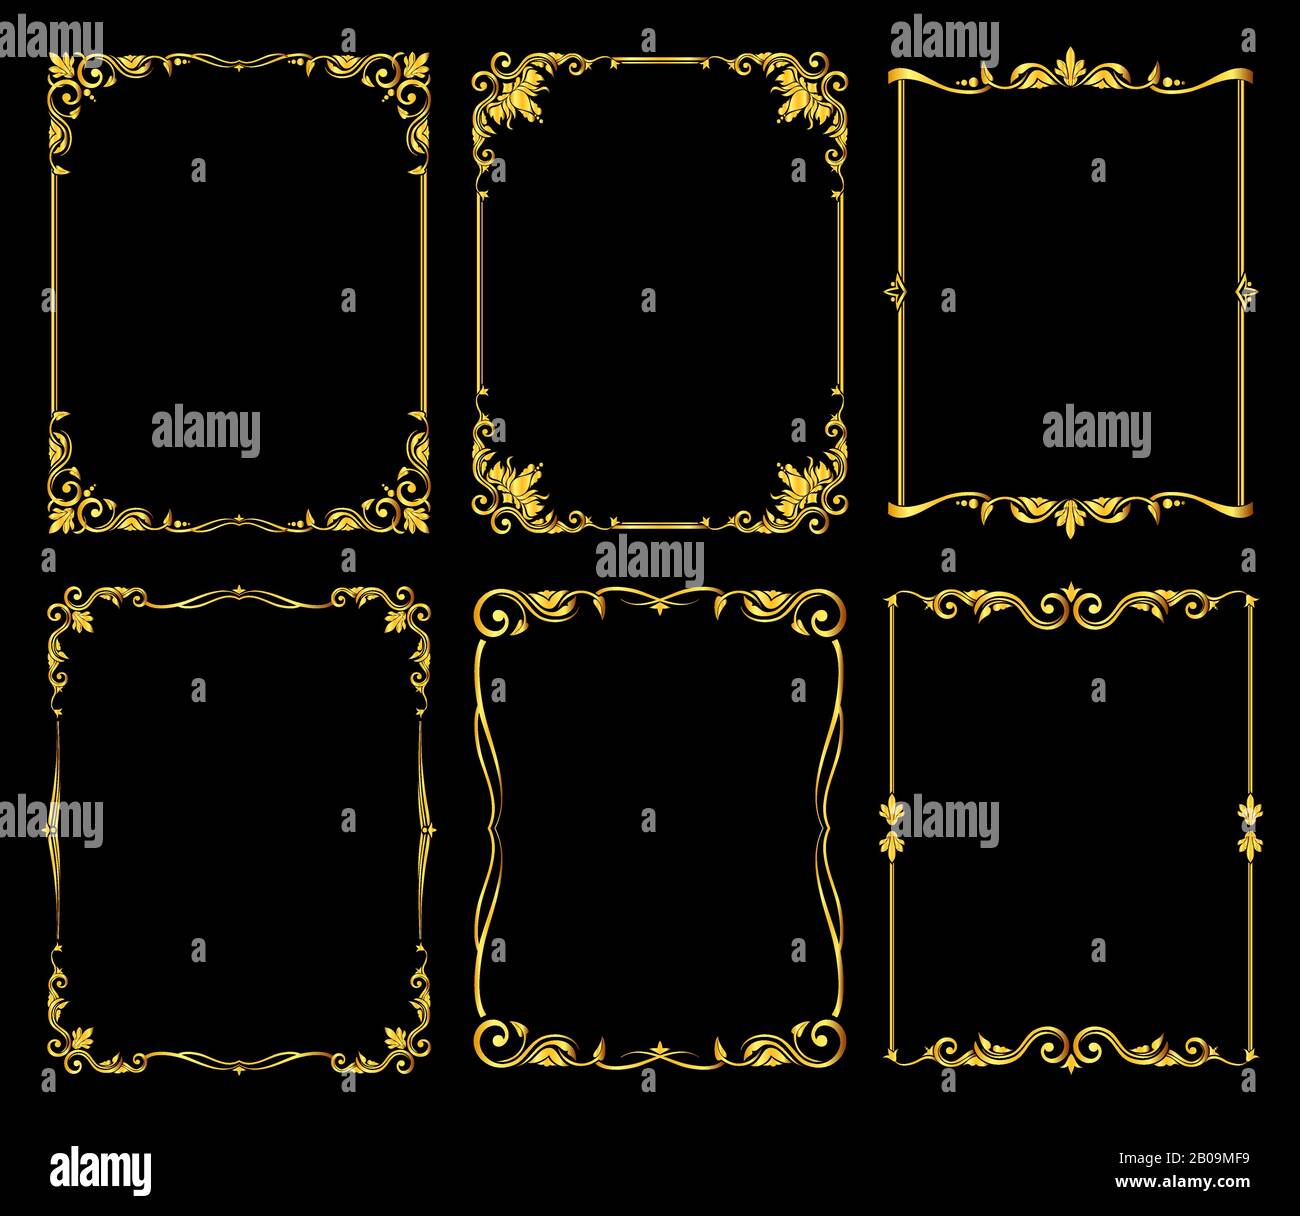 Ornate golden vector frames set over black background. Decoration frame design illustration Stock Vector